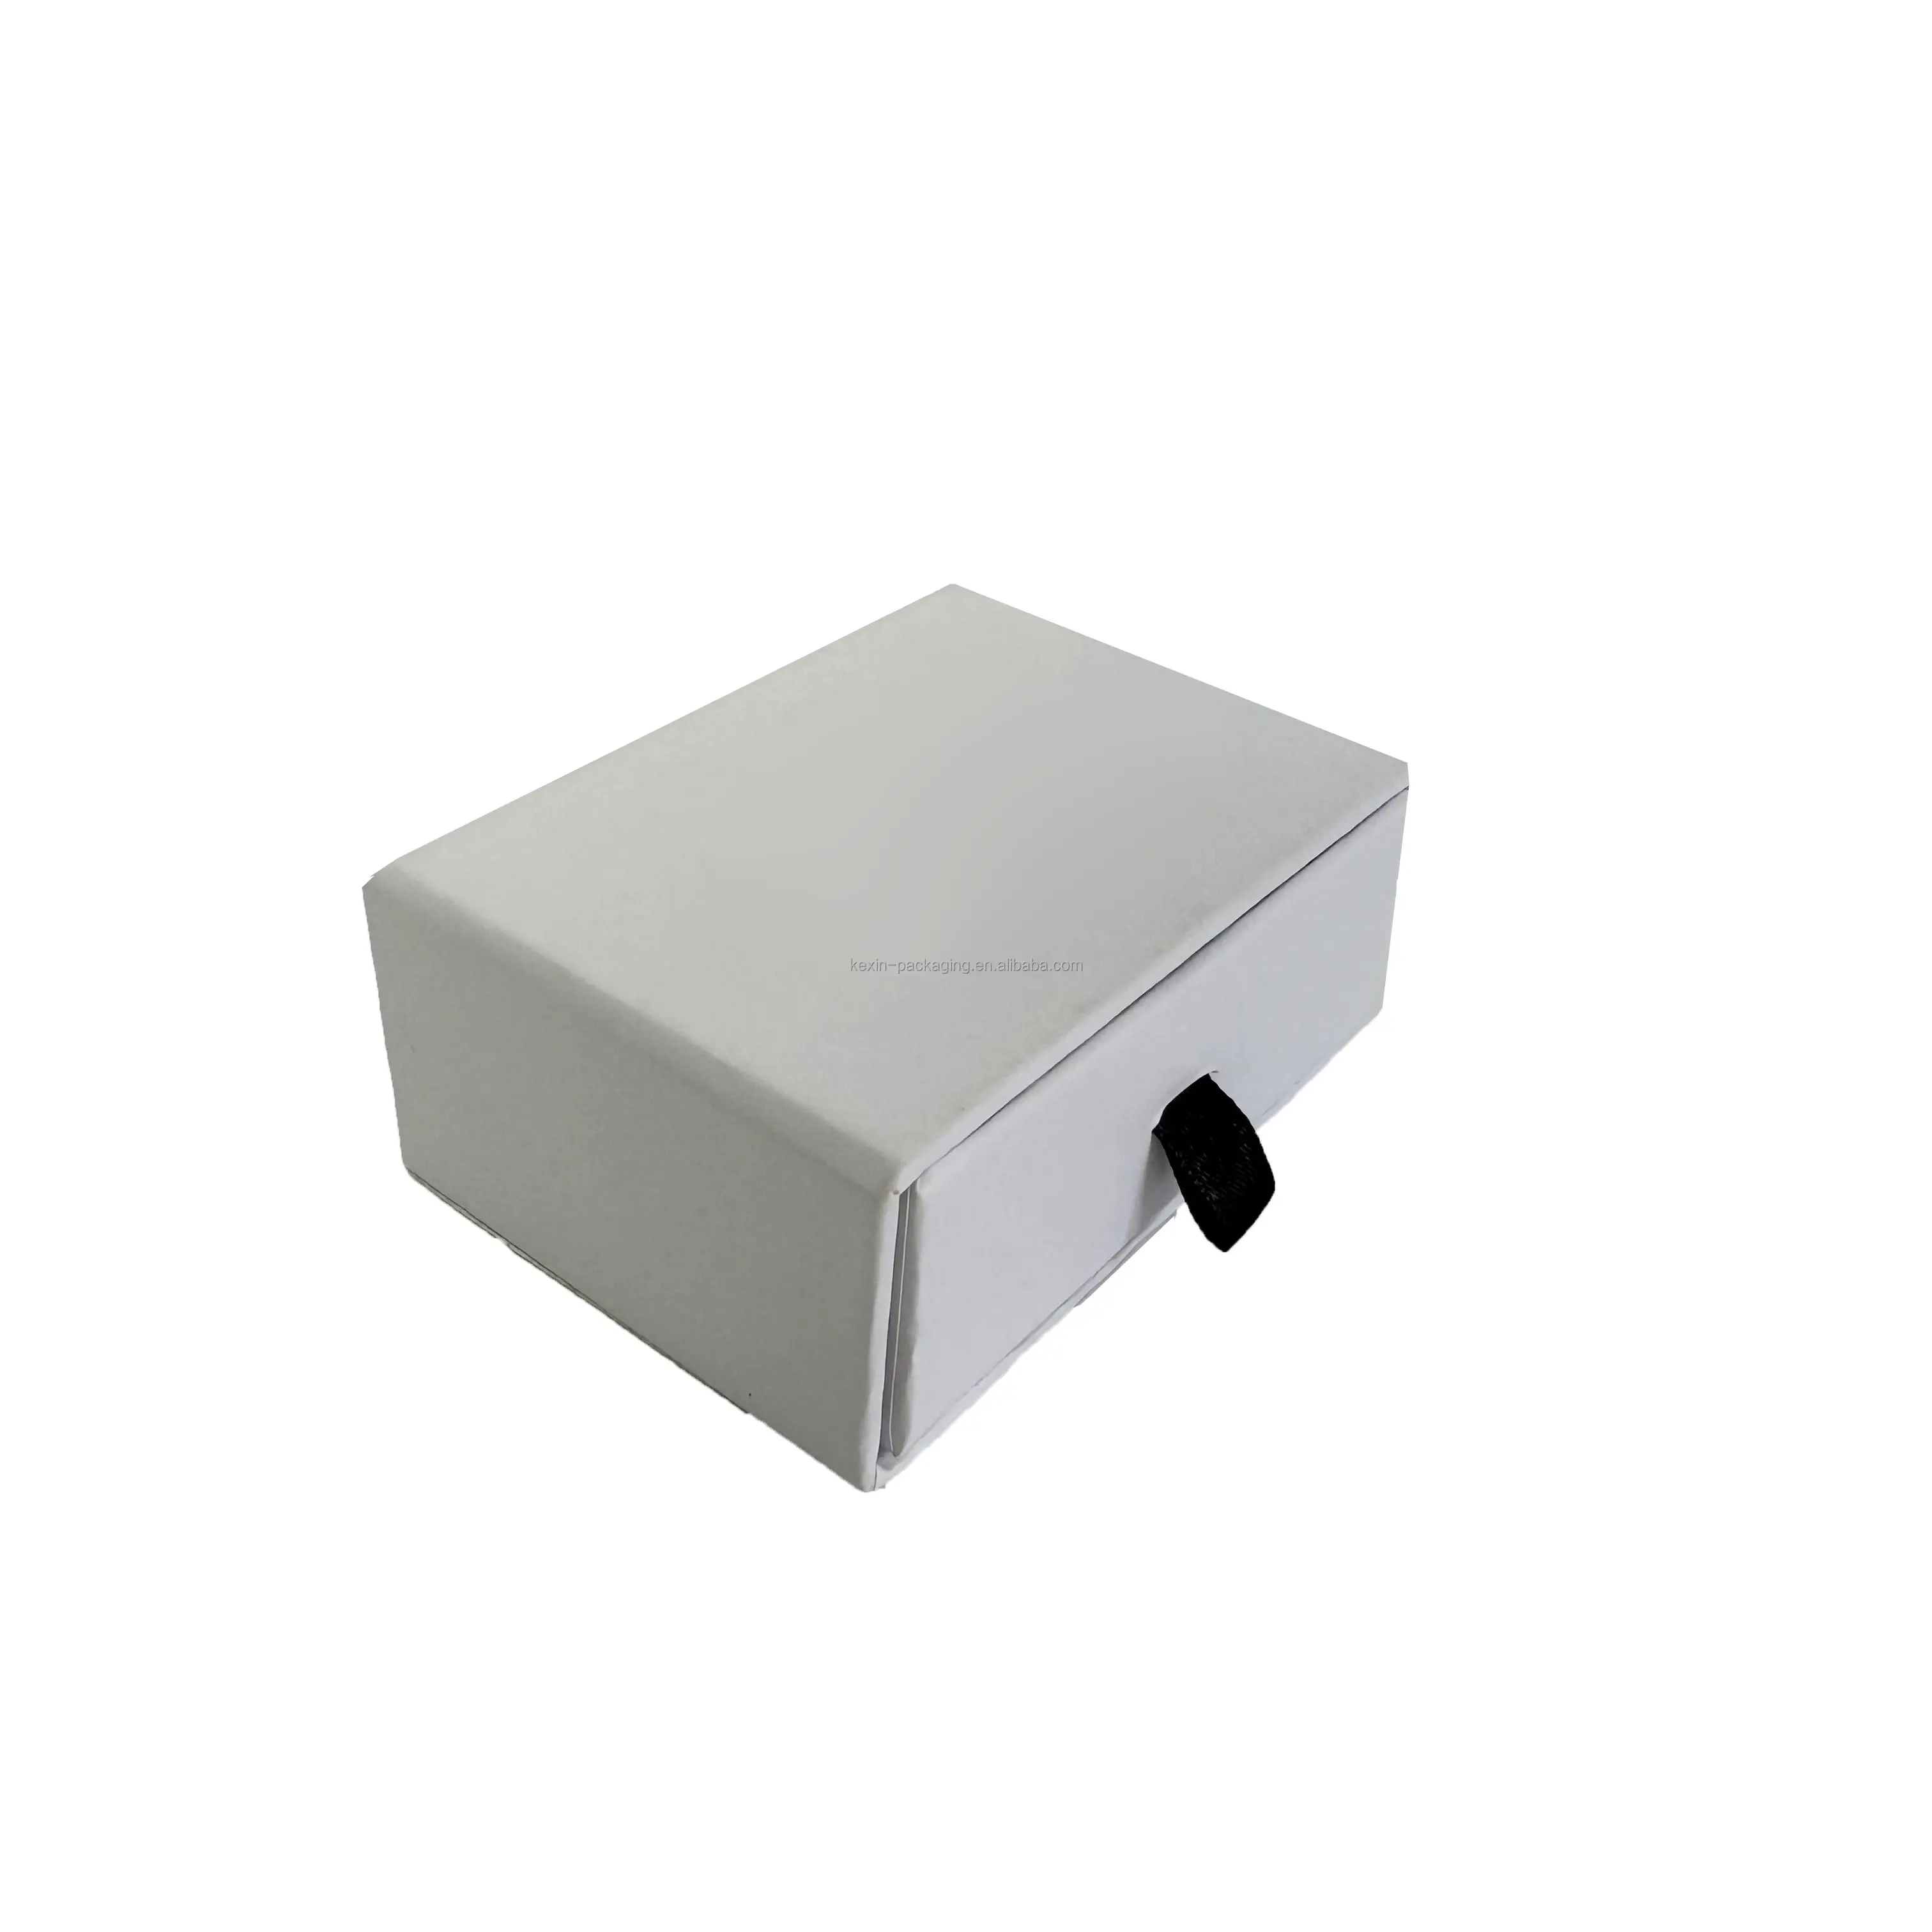 럭셔리 작은 서랍 상자 보석 사용자 정의 로고-단단한 판지 종이 포장 슬라이딩 커버 리본 매트 라미네이션 스탬핑